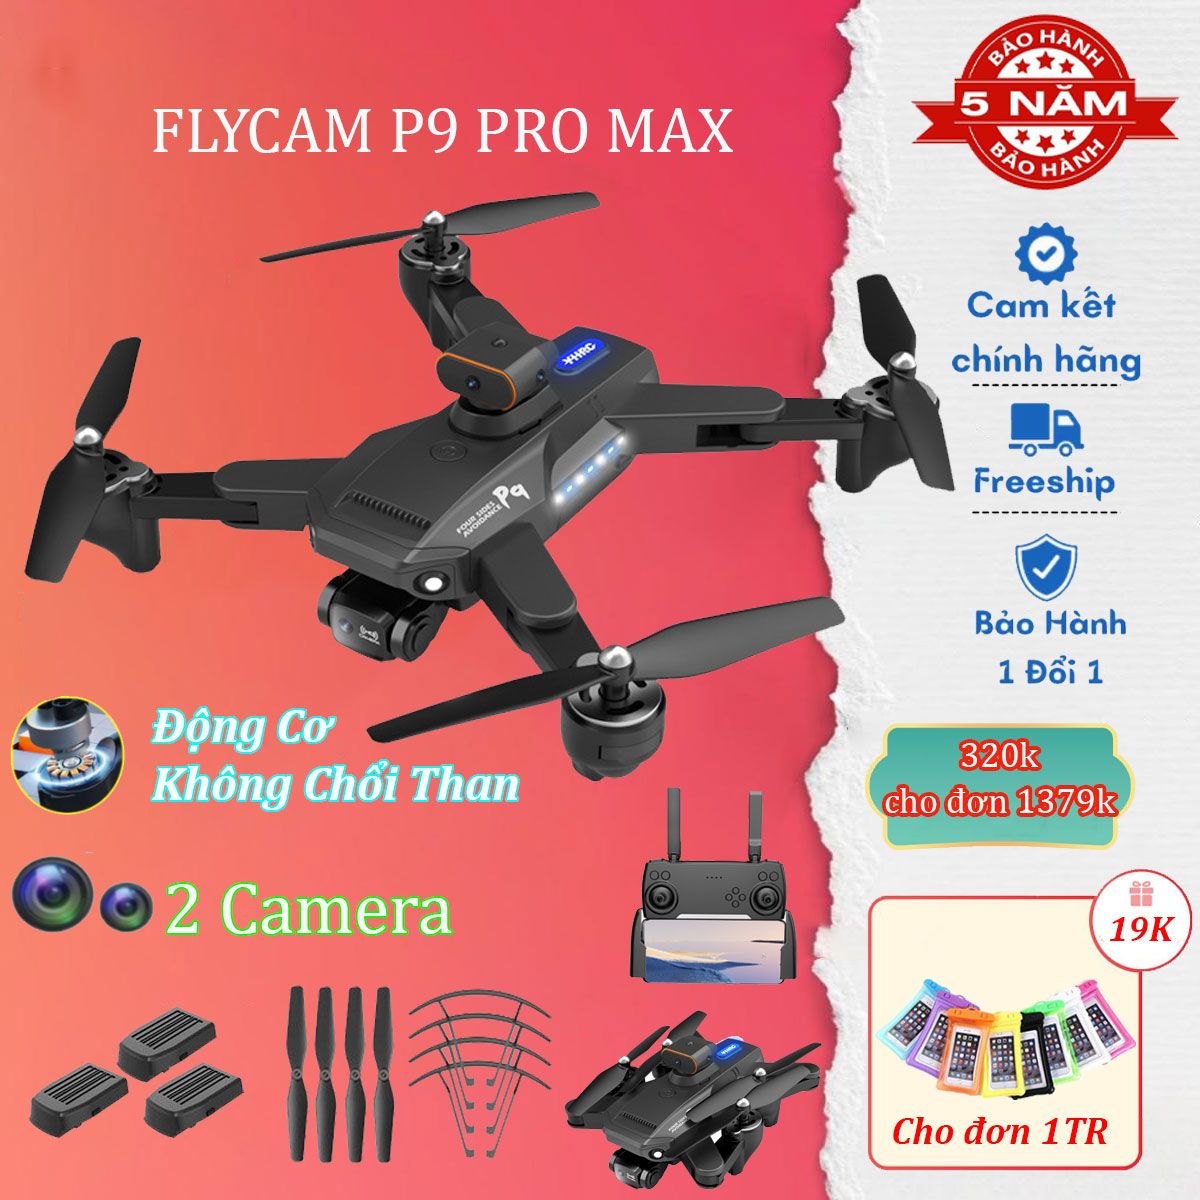 Flycam P9 Pro MAX có camera 4k HD sắc nét, fly cam, máy bay flycam, flycam giá rẻ có động cơ không chổi than, drone mini siêu bền